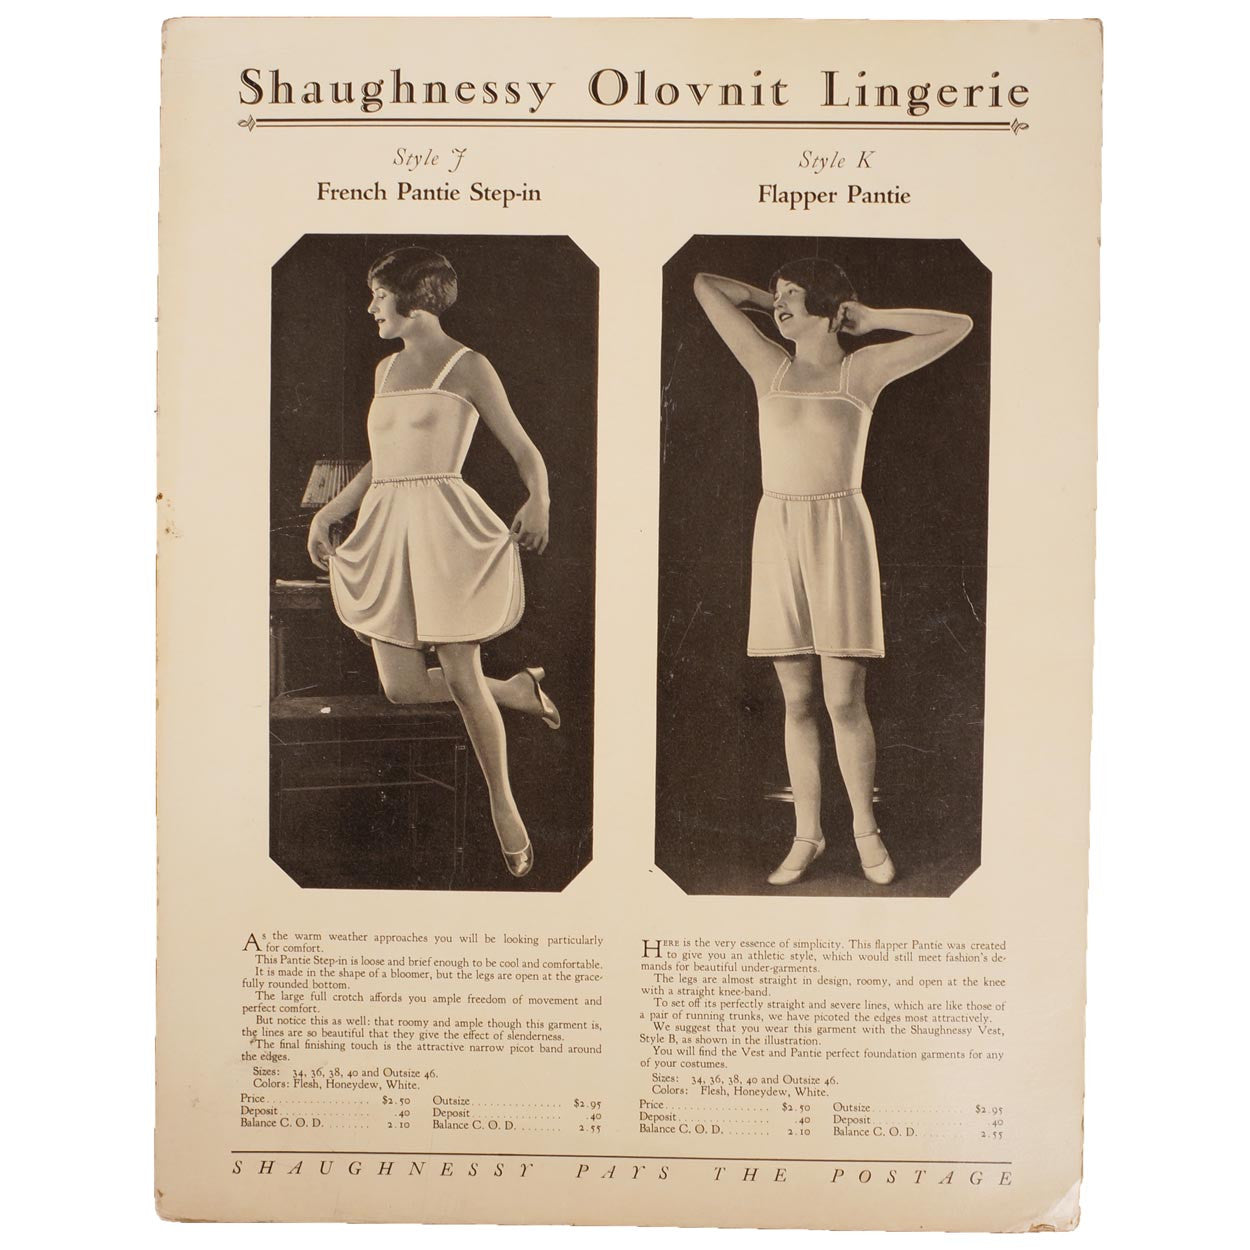 Vintage 1920 DOVE Under-Garments Lingerie Underwear Fashion